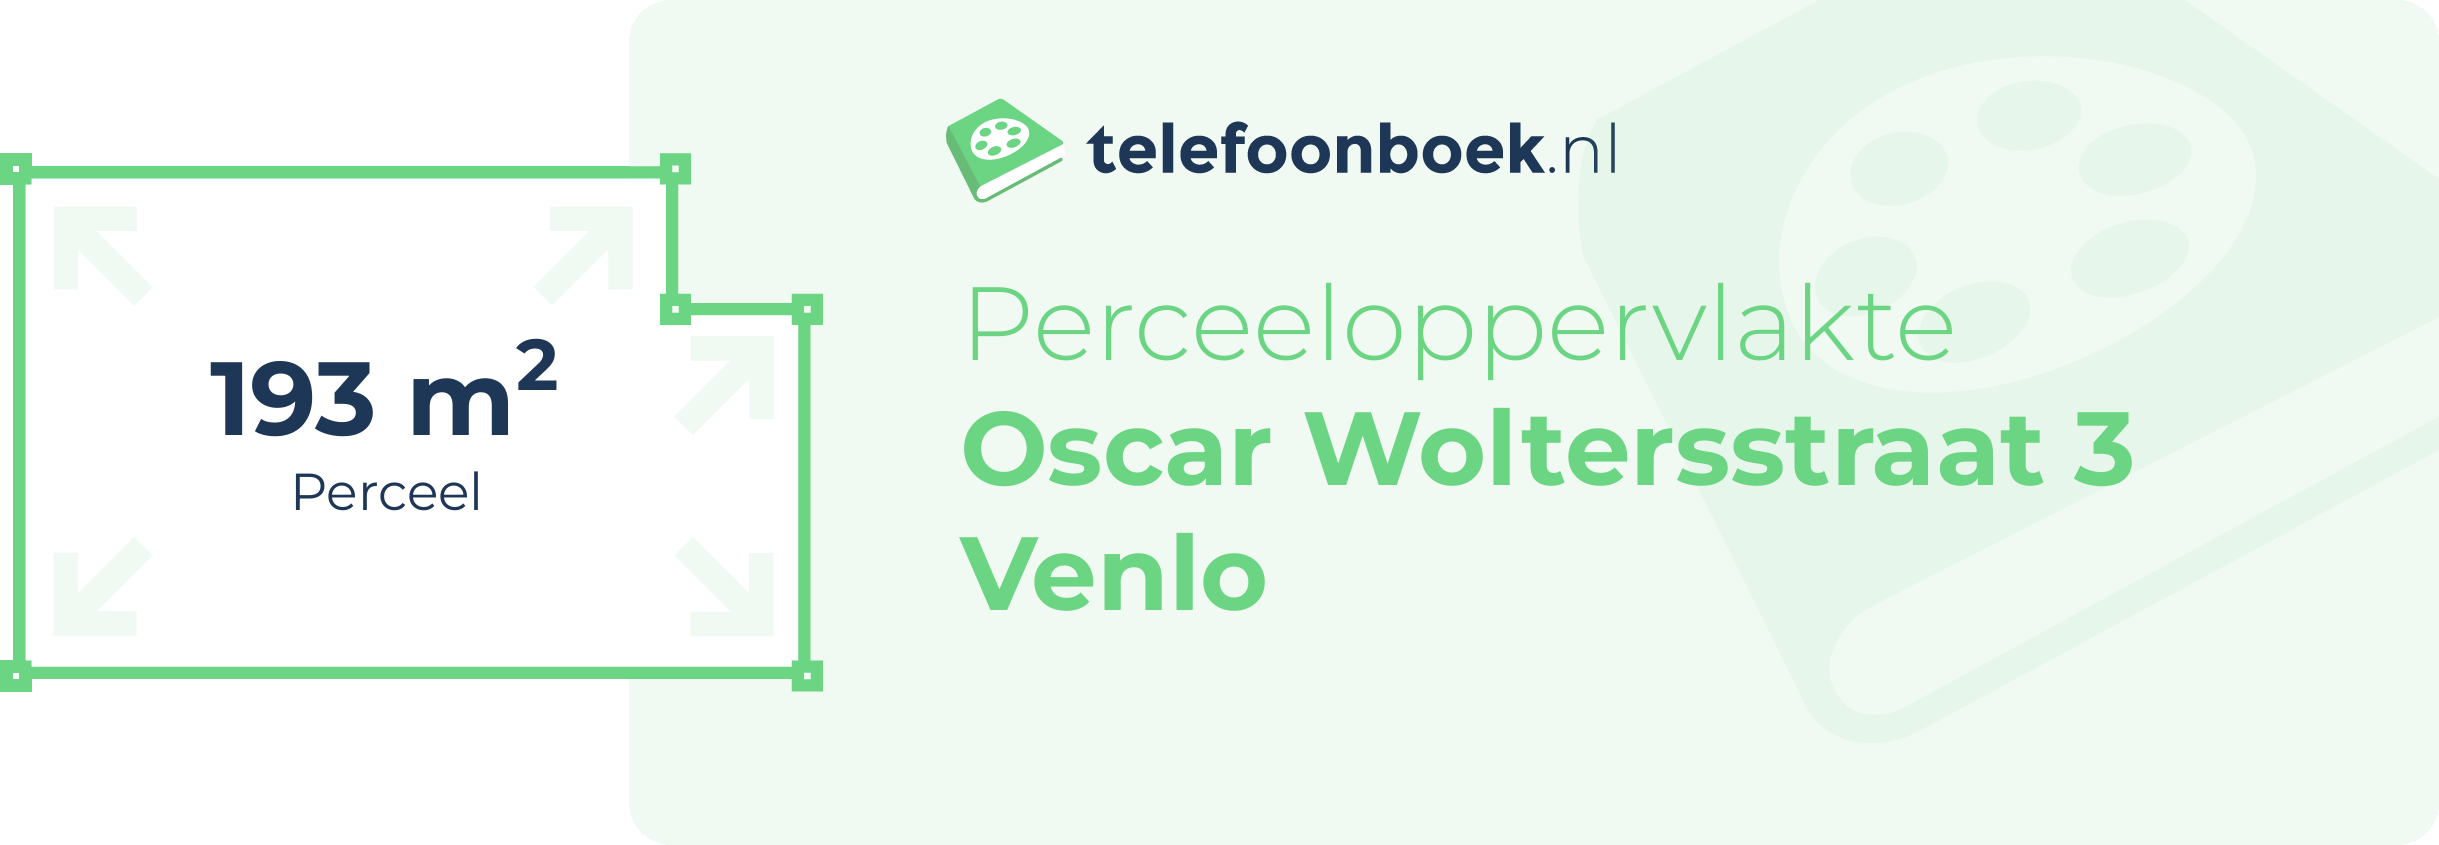 Perceeloppervlakte Oscar Woltersstraat 3 Venlo